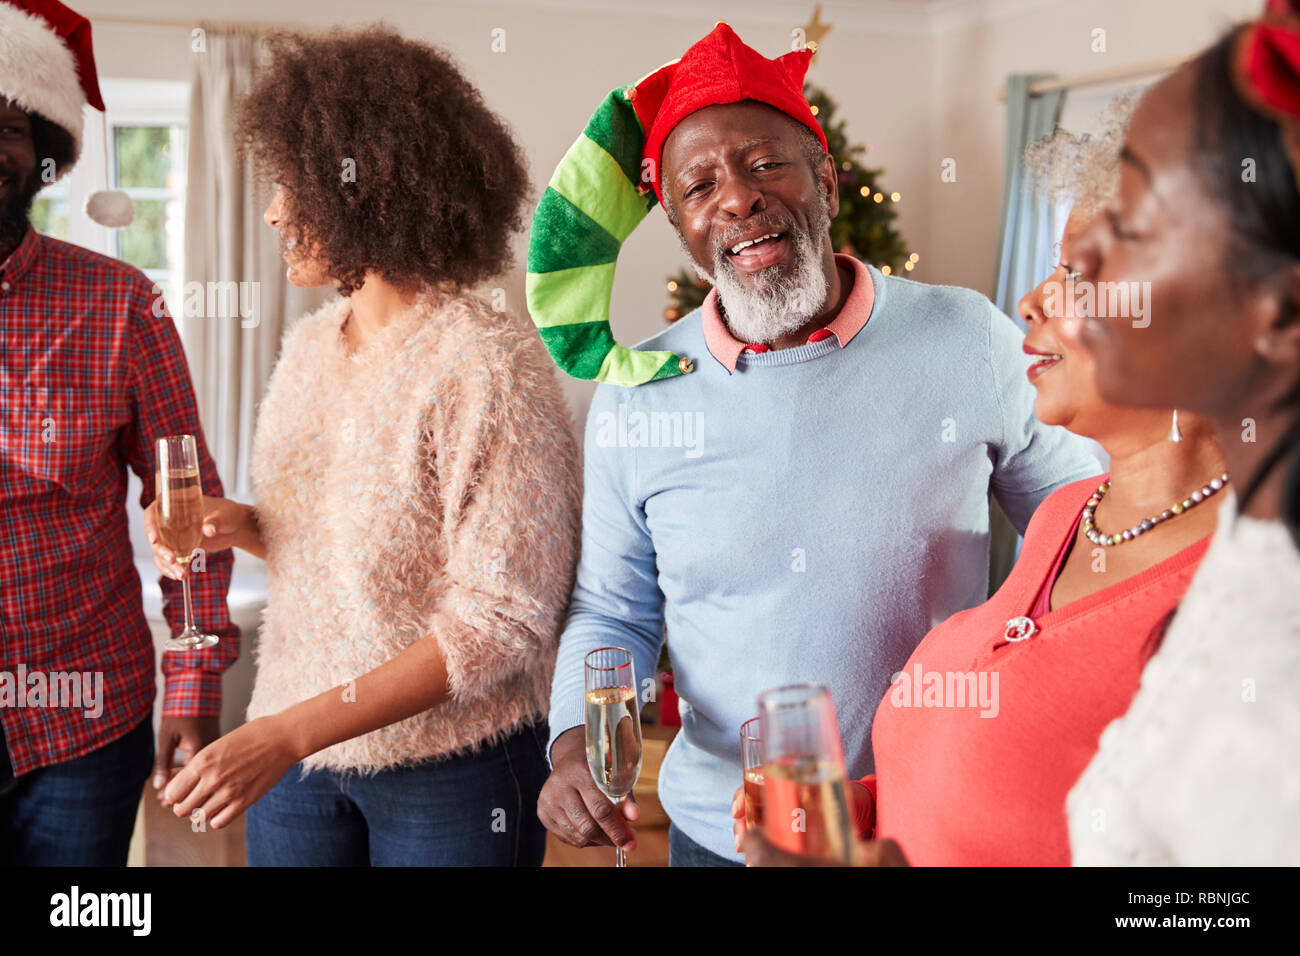 Los padres con hijos adultos beber champán, que celebran la Navidad en el hogar Foto de stock